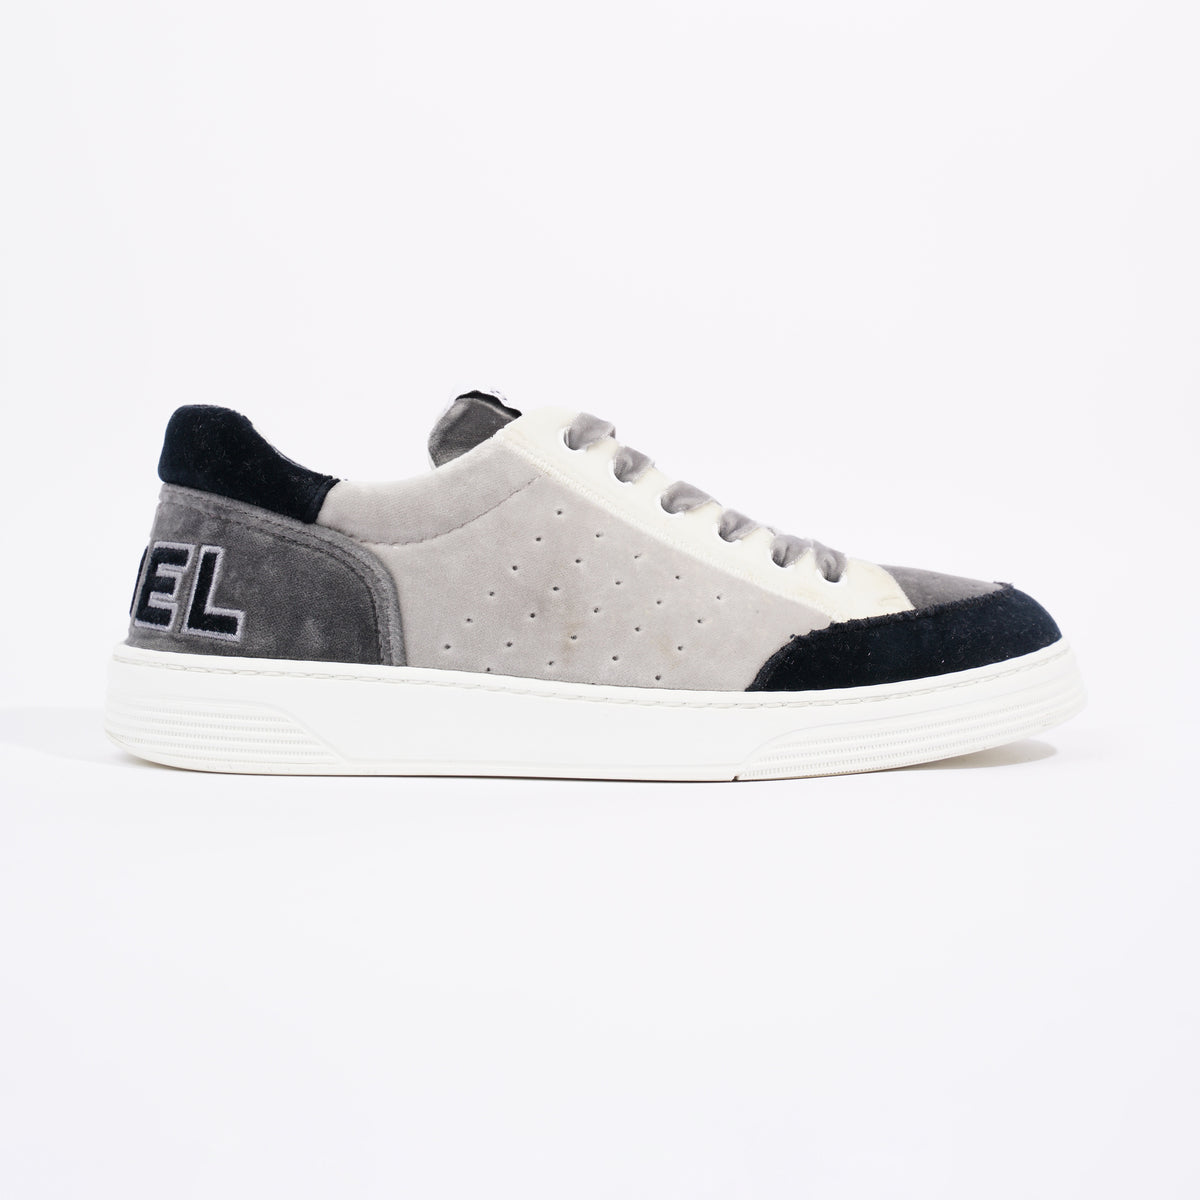 Louis Vuitton Womens #54 Sneaker Black White EU 37 / UK 4 – Luxe Collective